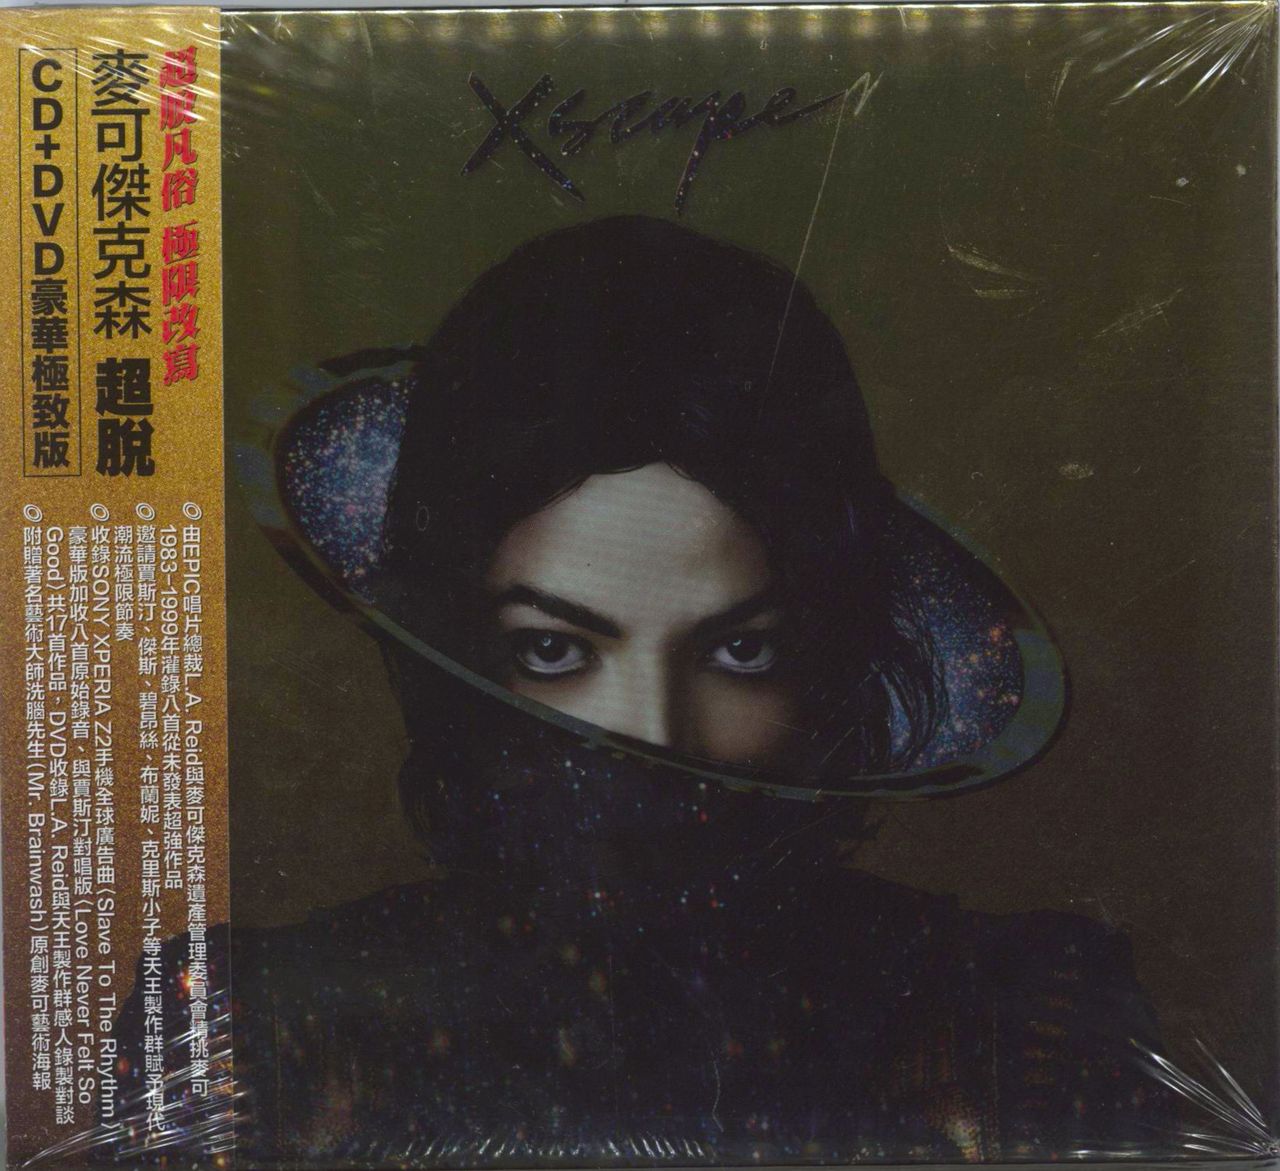 Jackson - Deluxe Edition 2-disc CD/DVD — RareVinyl.com